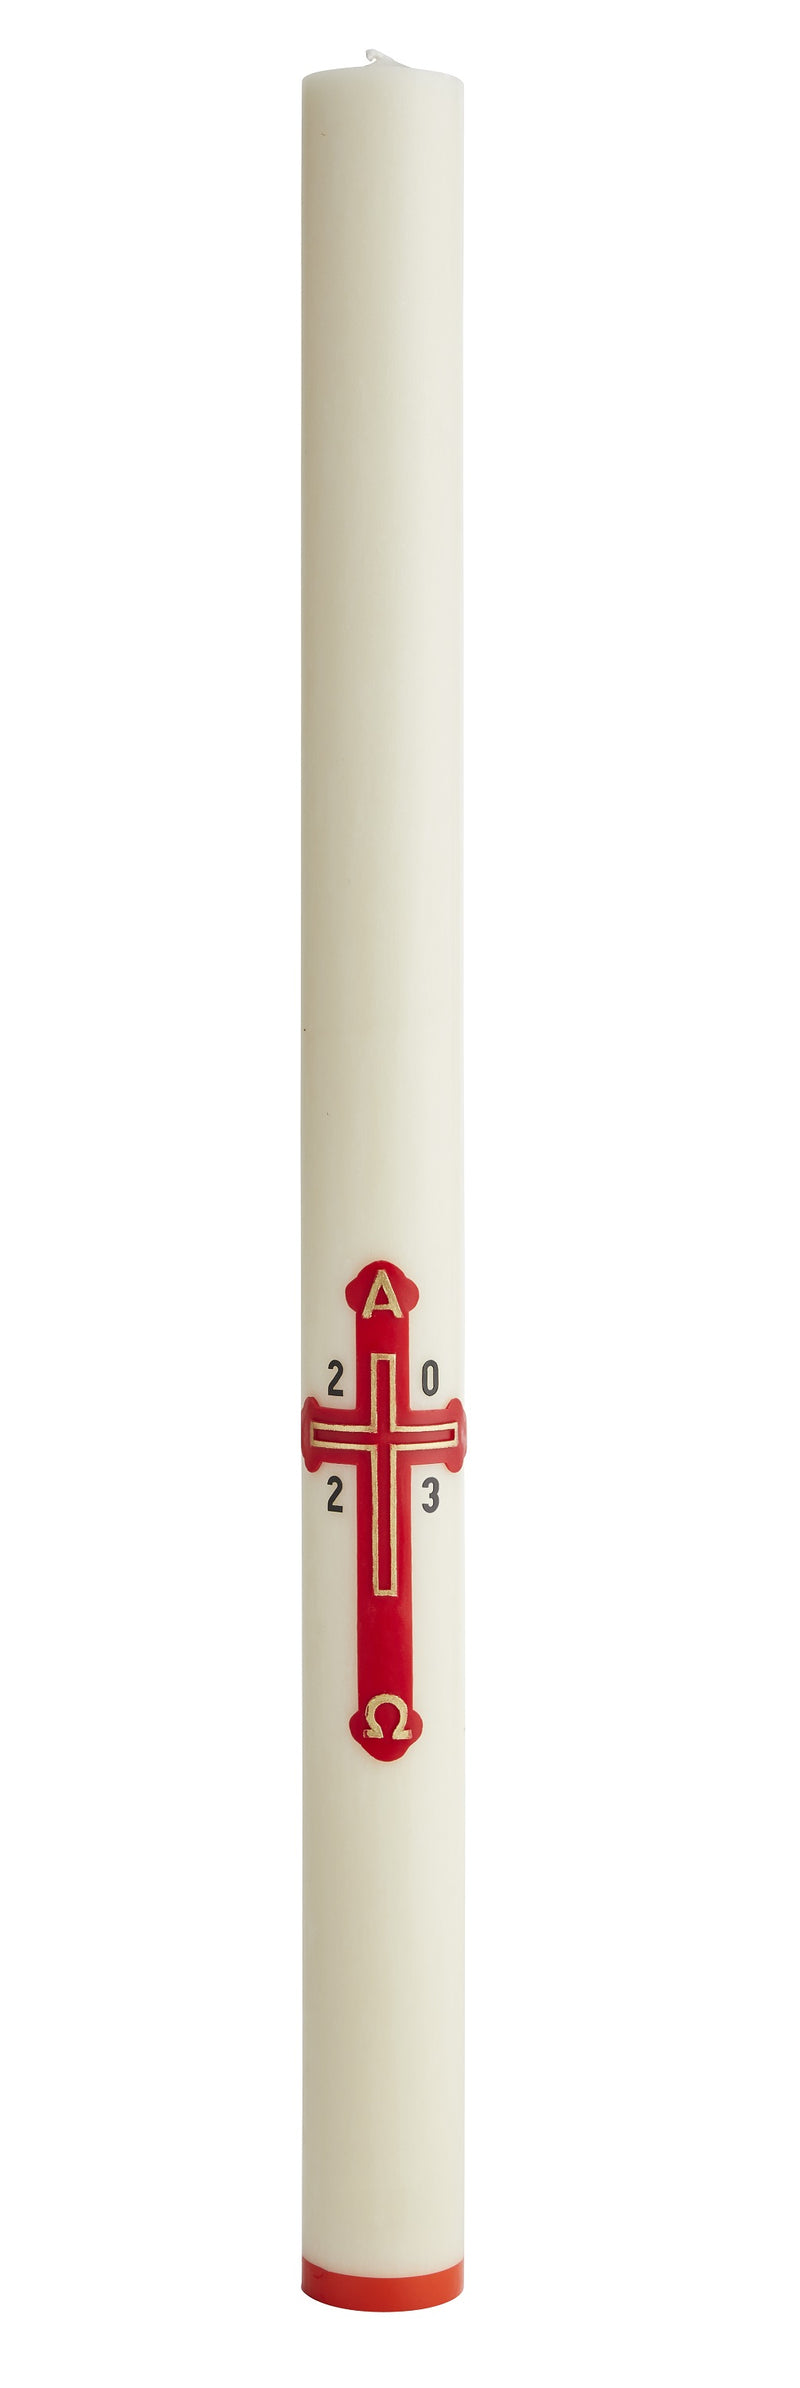 Cierge Pascal avec décoration "Croix Dorée" Décor en cire rouge, en relief, peint à la main. Ciergerie Desfossés